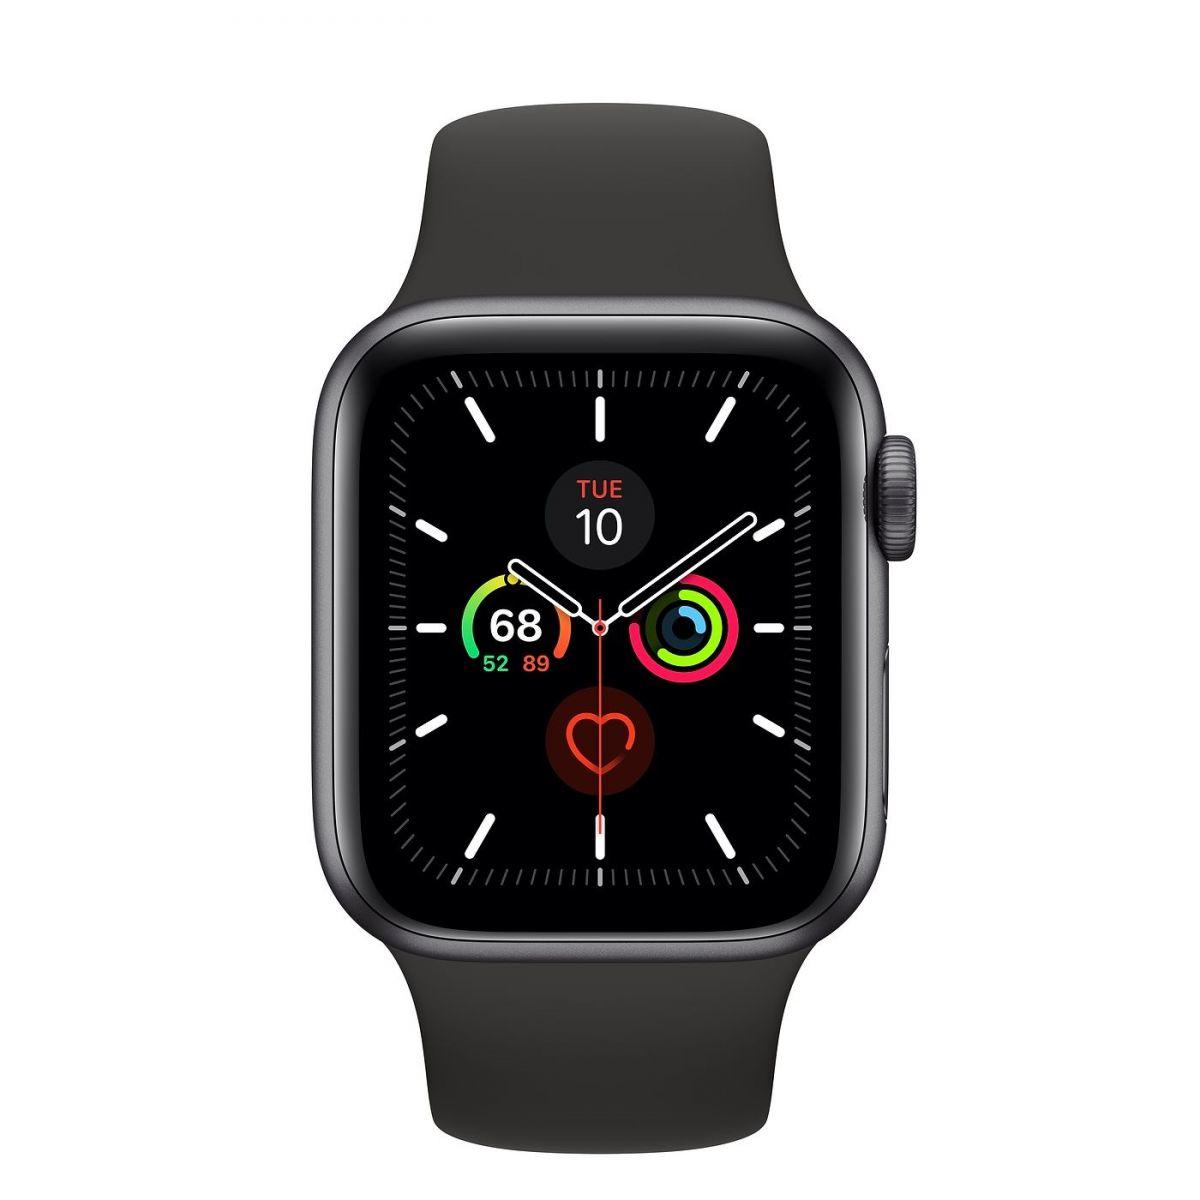 Apple Watch là gì? Những tính năng đồng hồ Apple Watch mà bạn nên